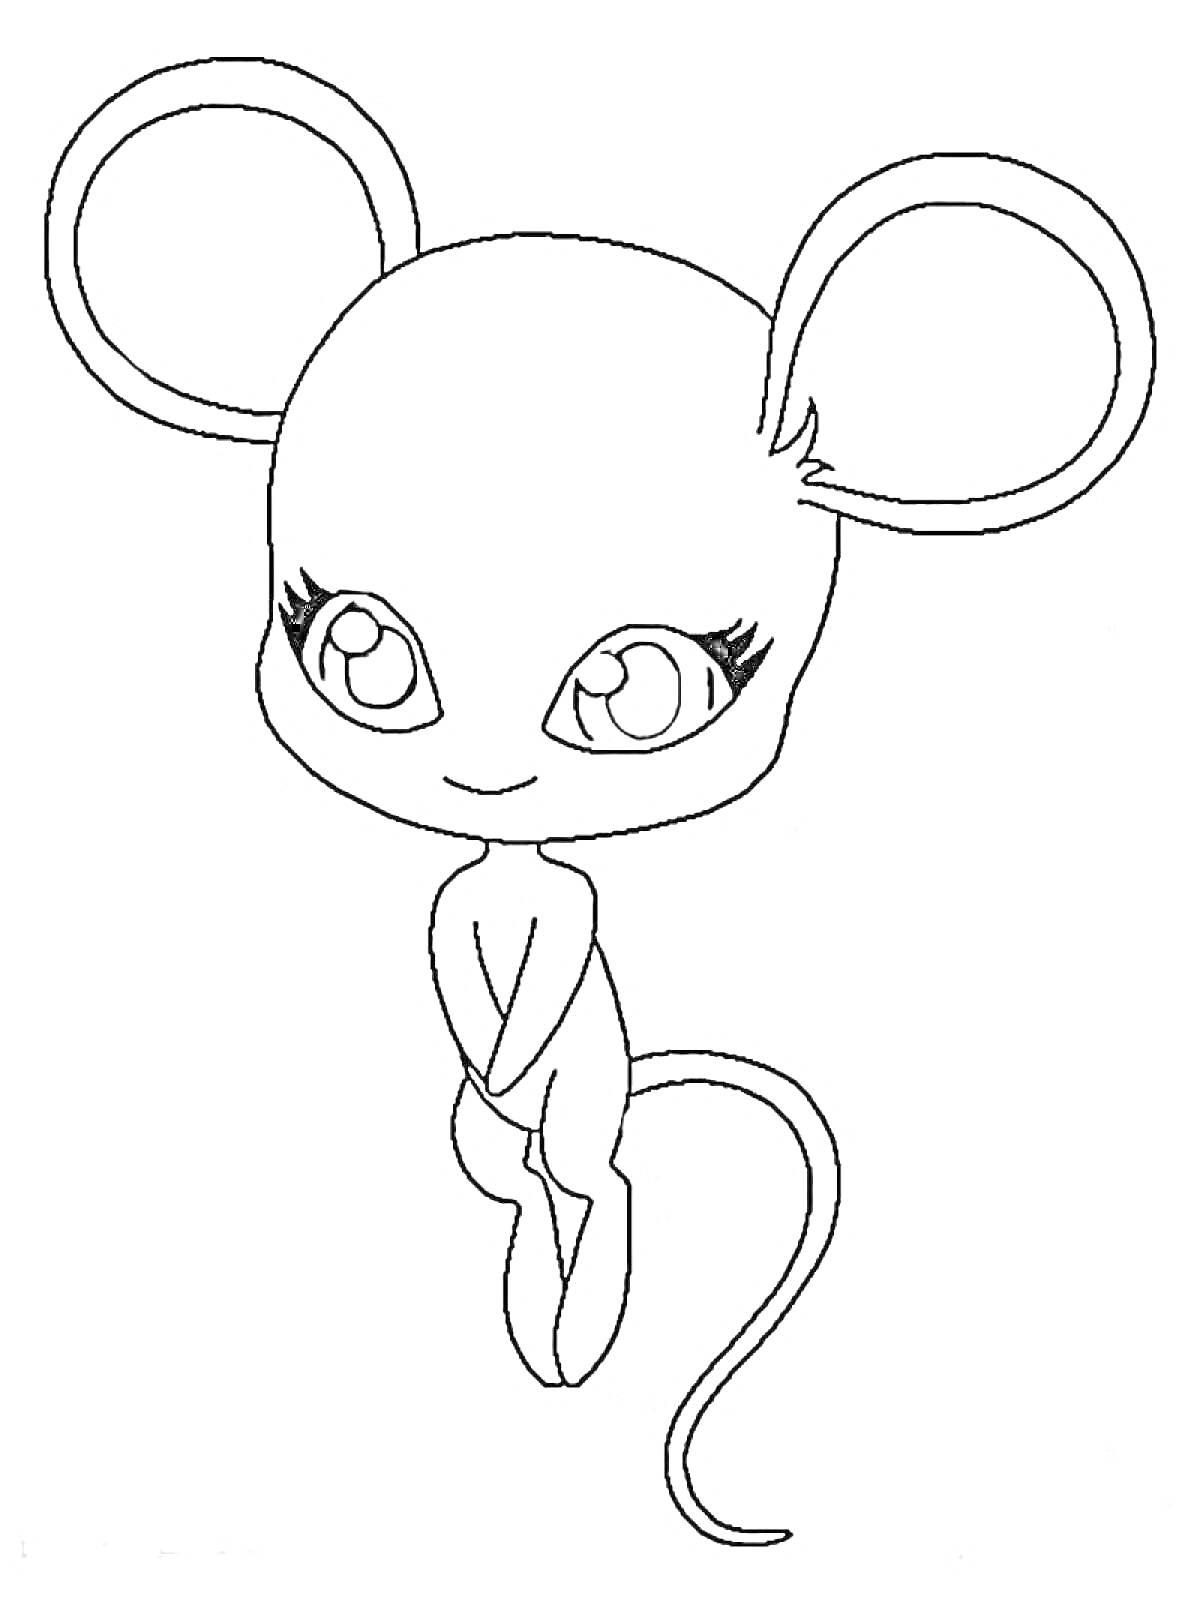 Раскраска Квами мыши с большими ушами, длинным хвостом и большими глазами.